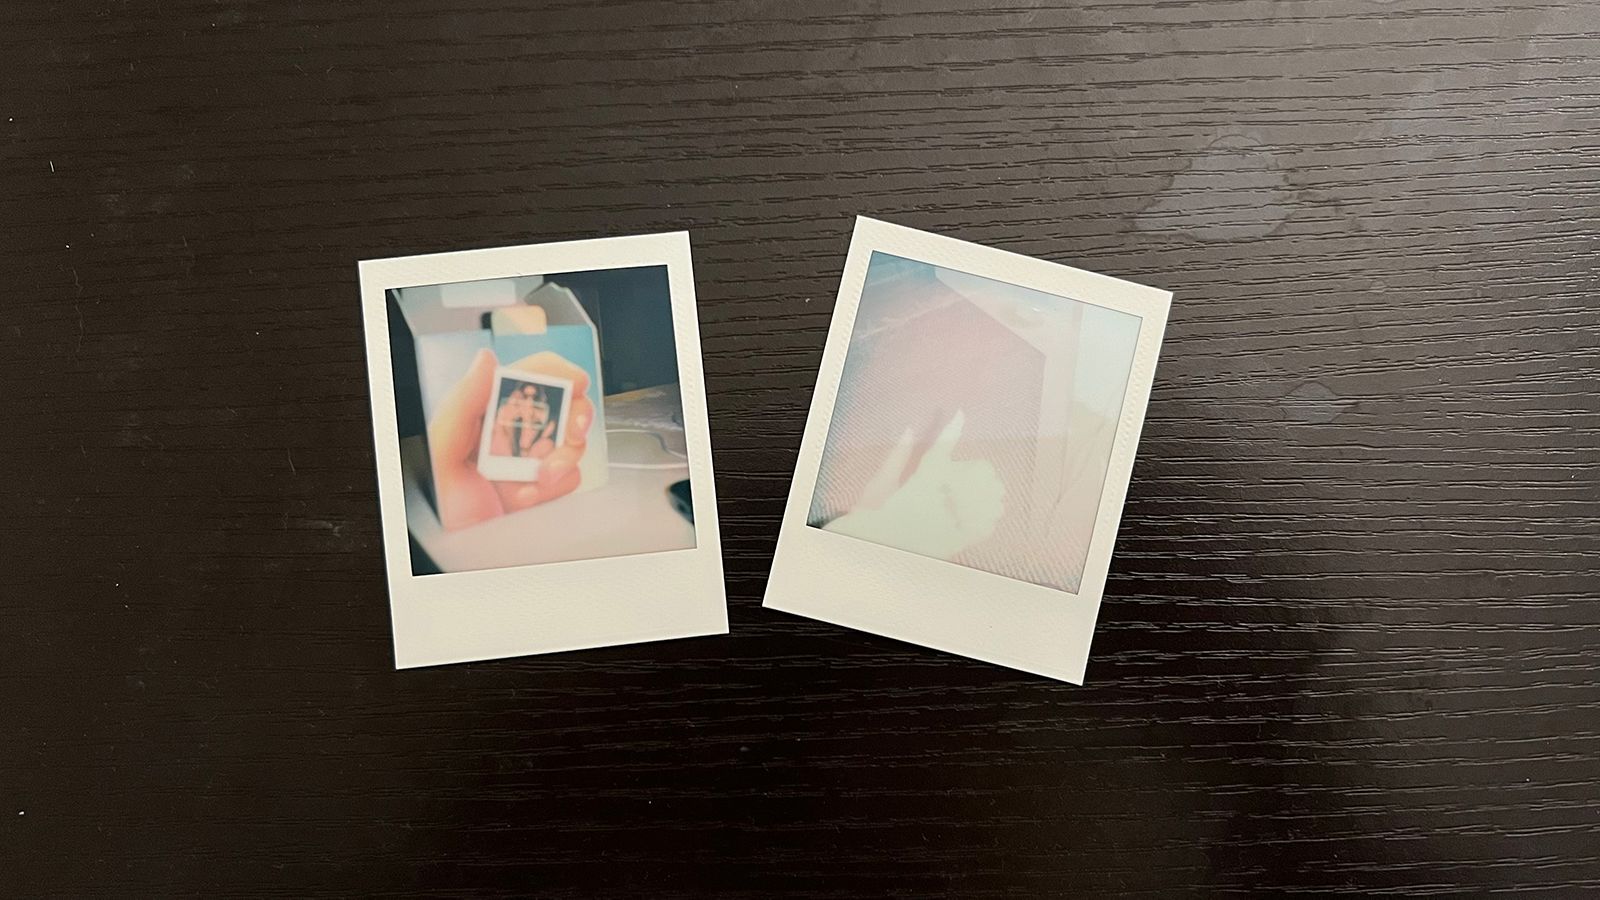 Polaroid Go review